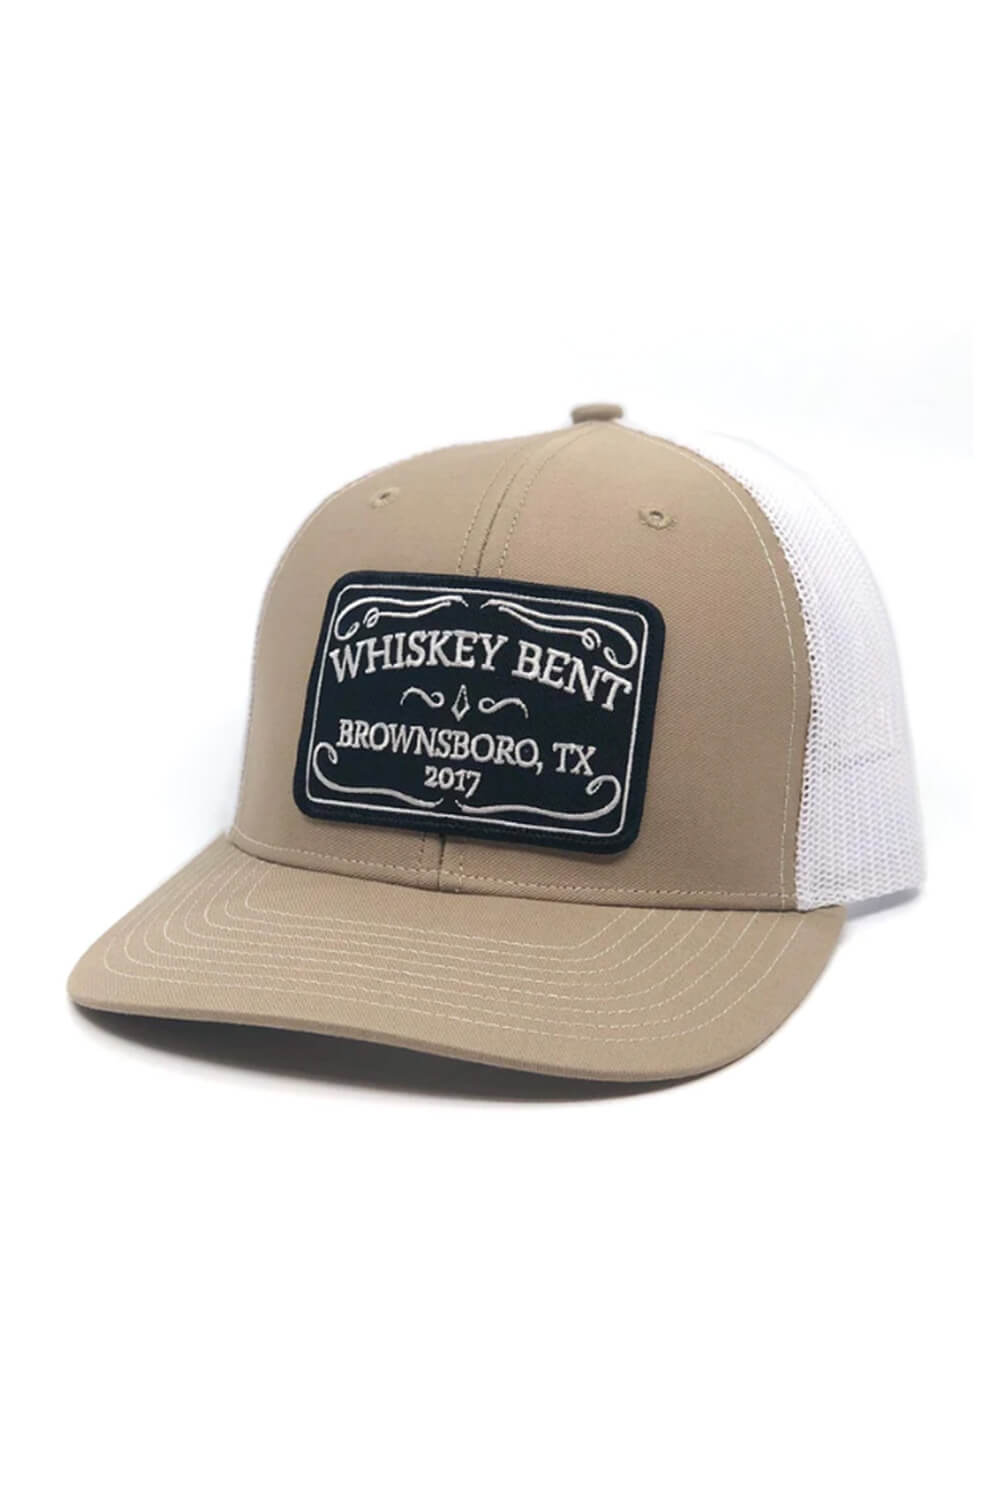 Whiskey Bent The Duke Trucker Hat for Men in Tan at Glik's , Os